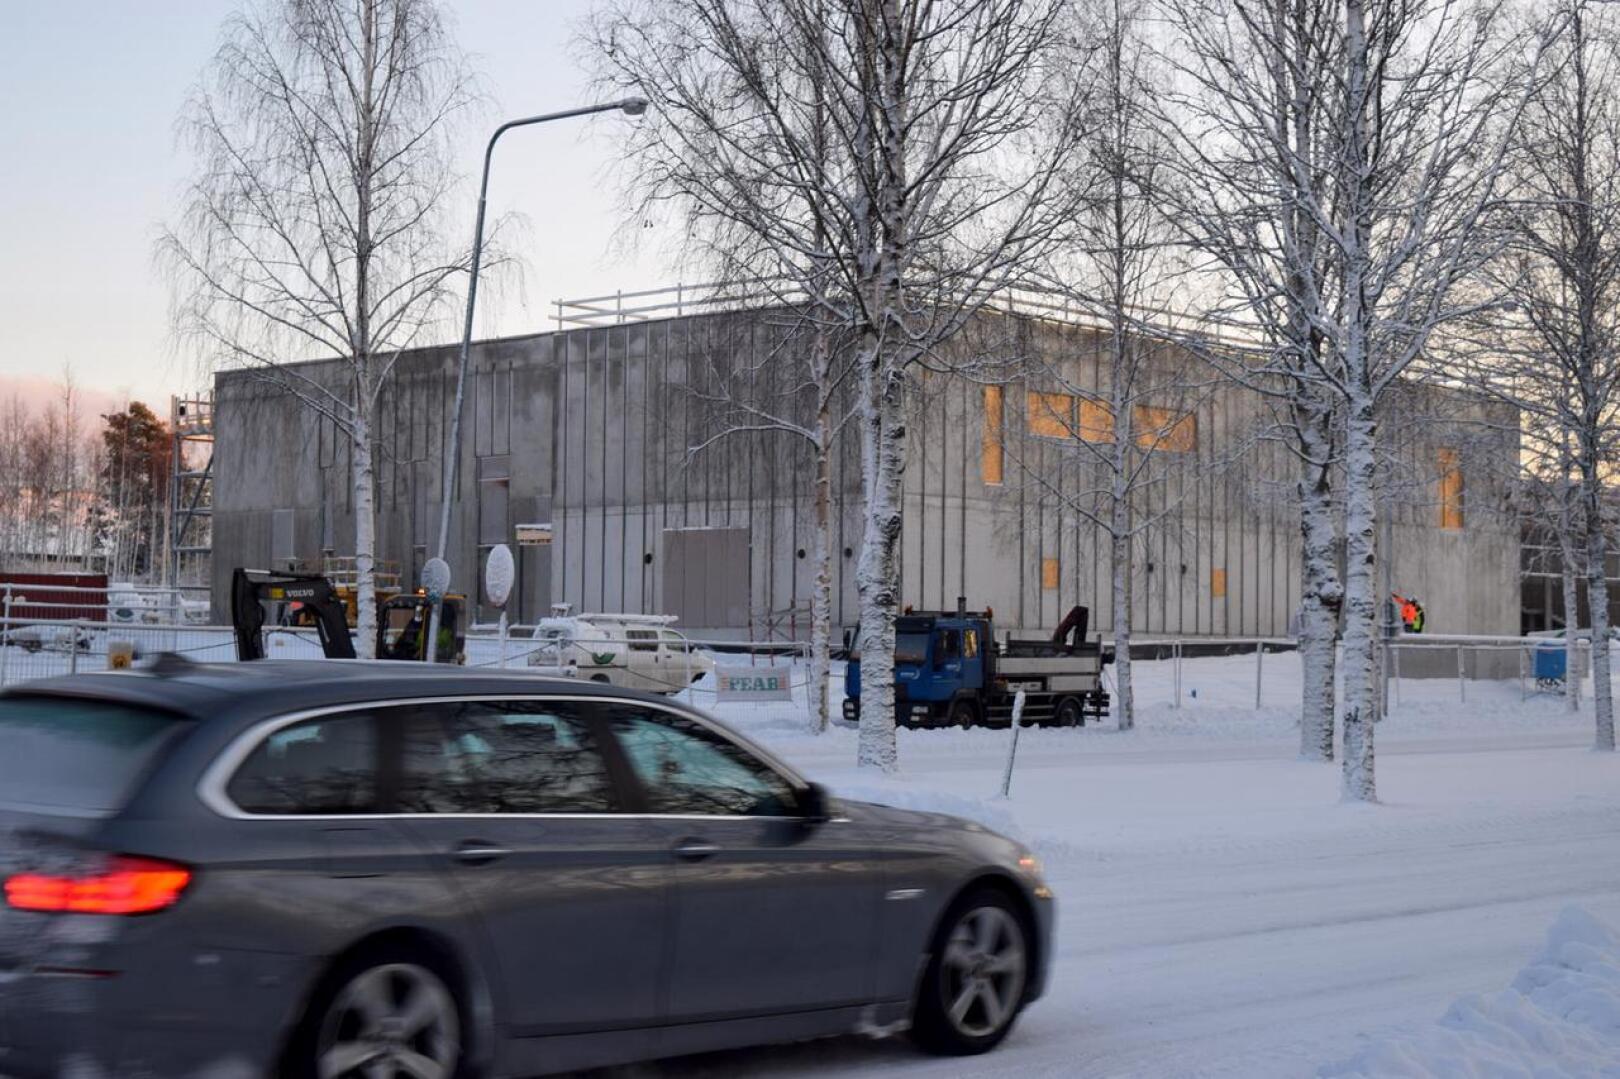 Kielikylpykoulu nousee Pietarinpuistikon varteen. Seuraavaksi työn alle otetaan Oxhamnin koulu. Rakentaminen tuskin jää tähänkään, sillä suunnitelmissa on ratkoa Pietarsaaren alakoulujen pulmia uudella investoinnilla tulevina vuosina.